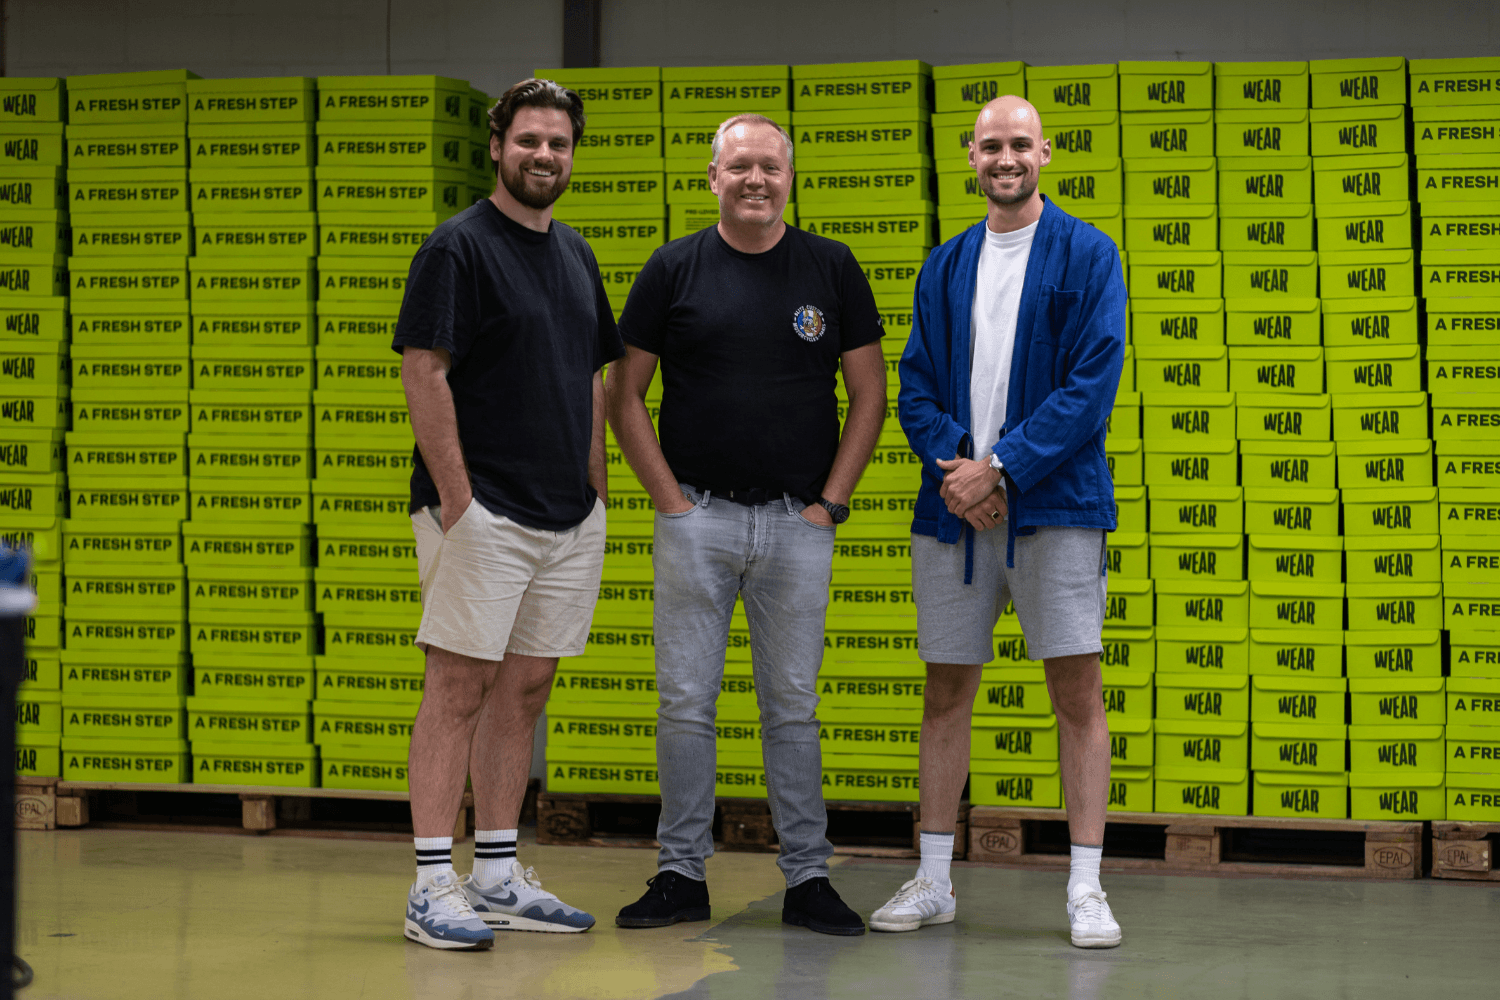 Wear Your Sneakers Ep. 3 met Arthur van der Kroft